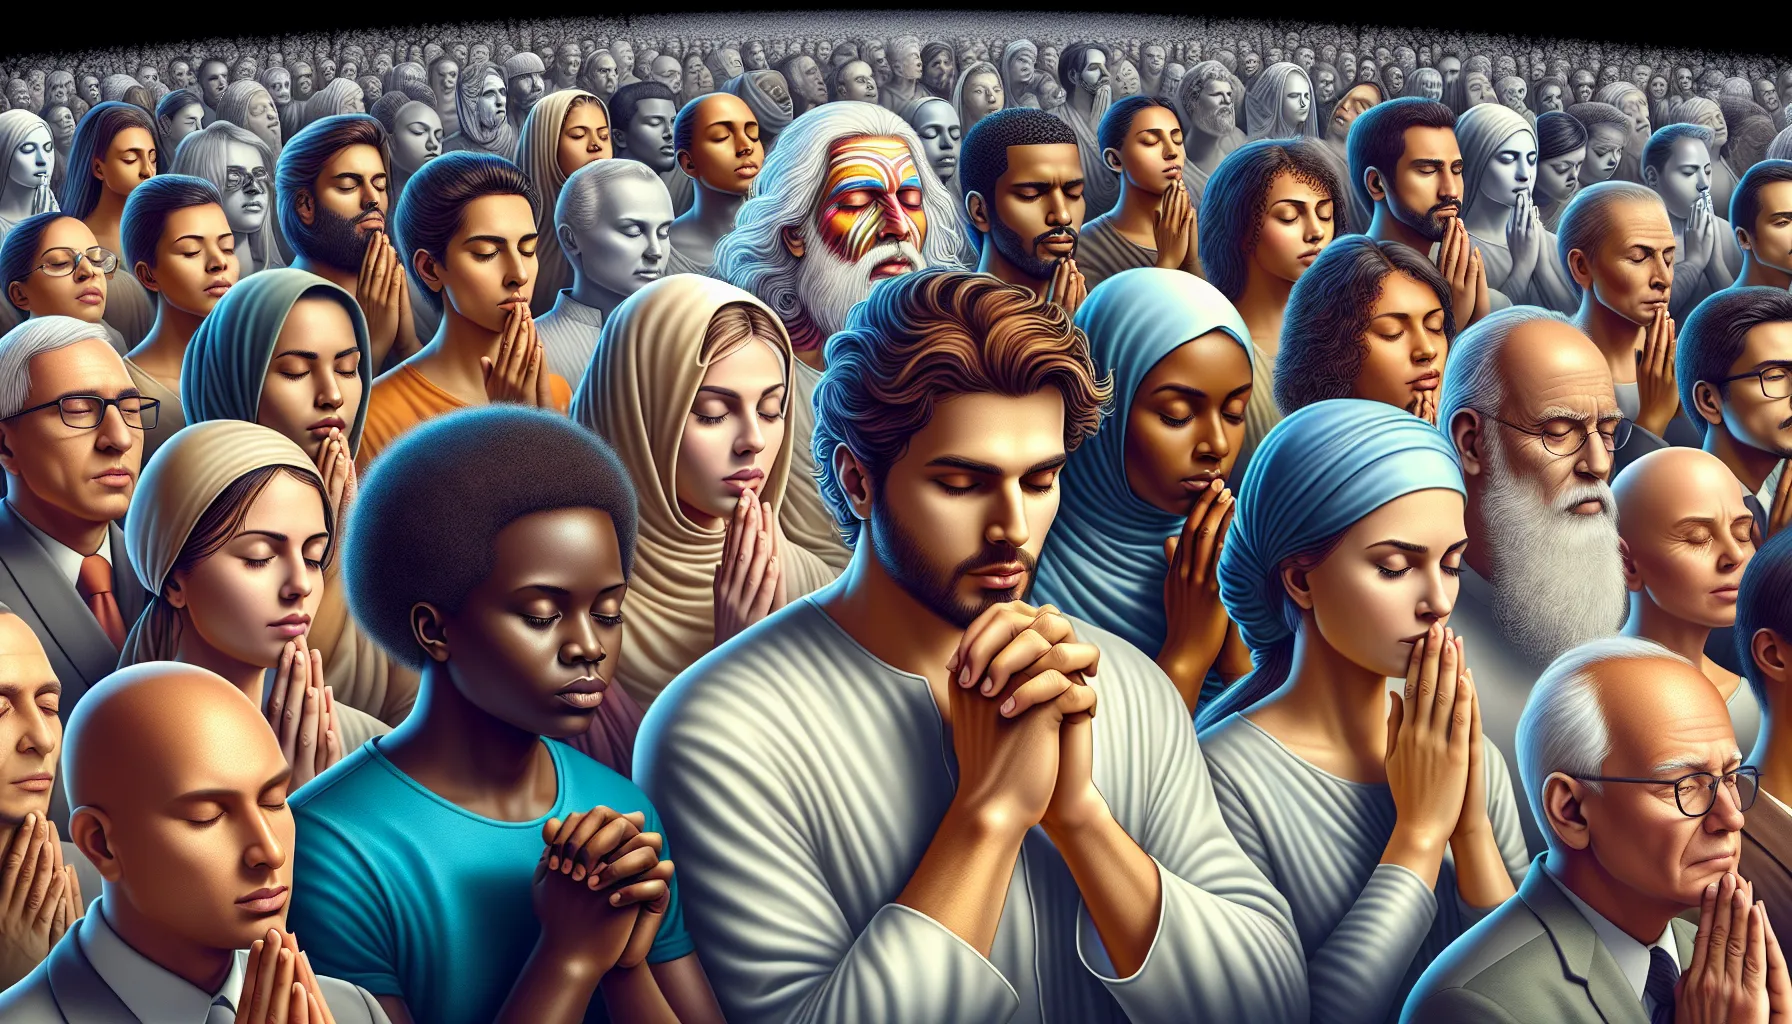 Imagen ilustrativa de un grupo de personas elegidas por Dios